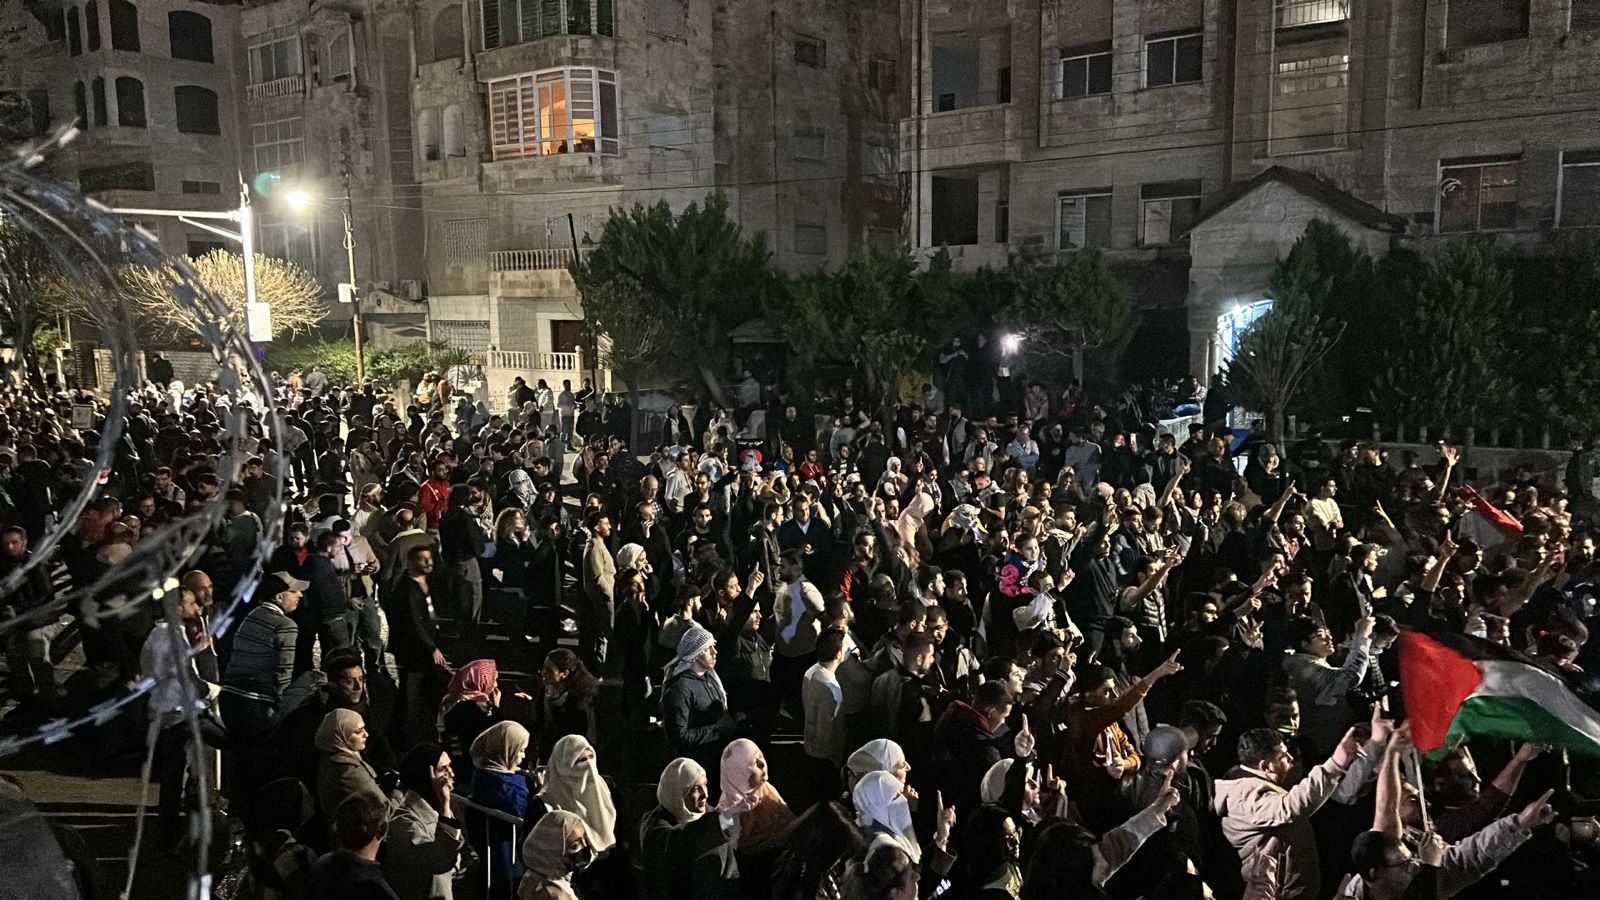 اكثر من (10) آلاف اردني يشاركون في حصار السفارة الصهيونية - فيديو